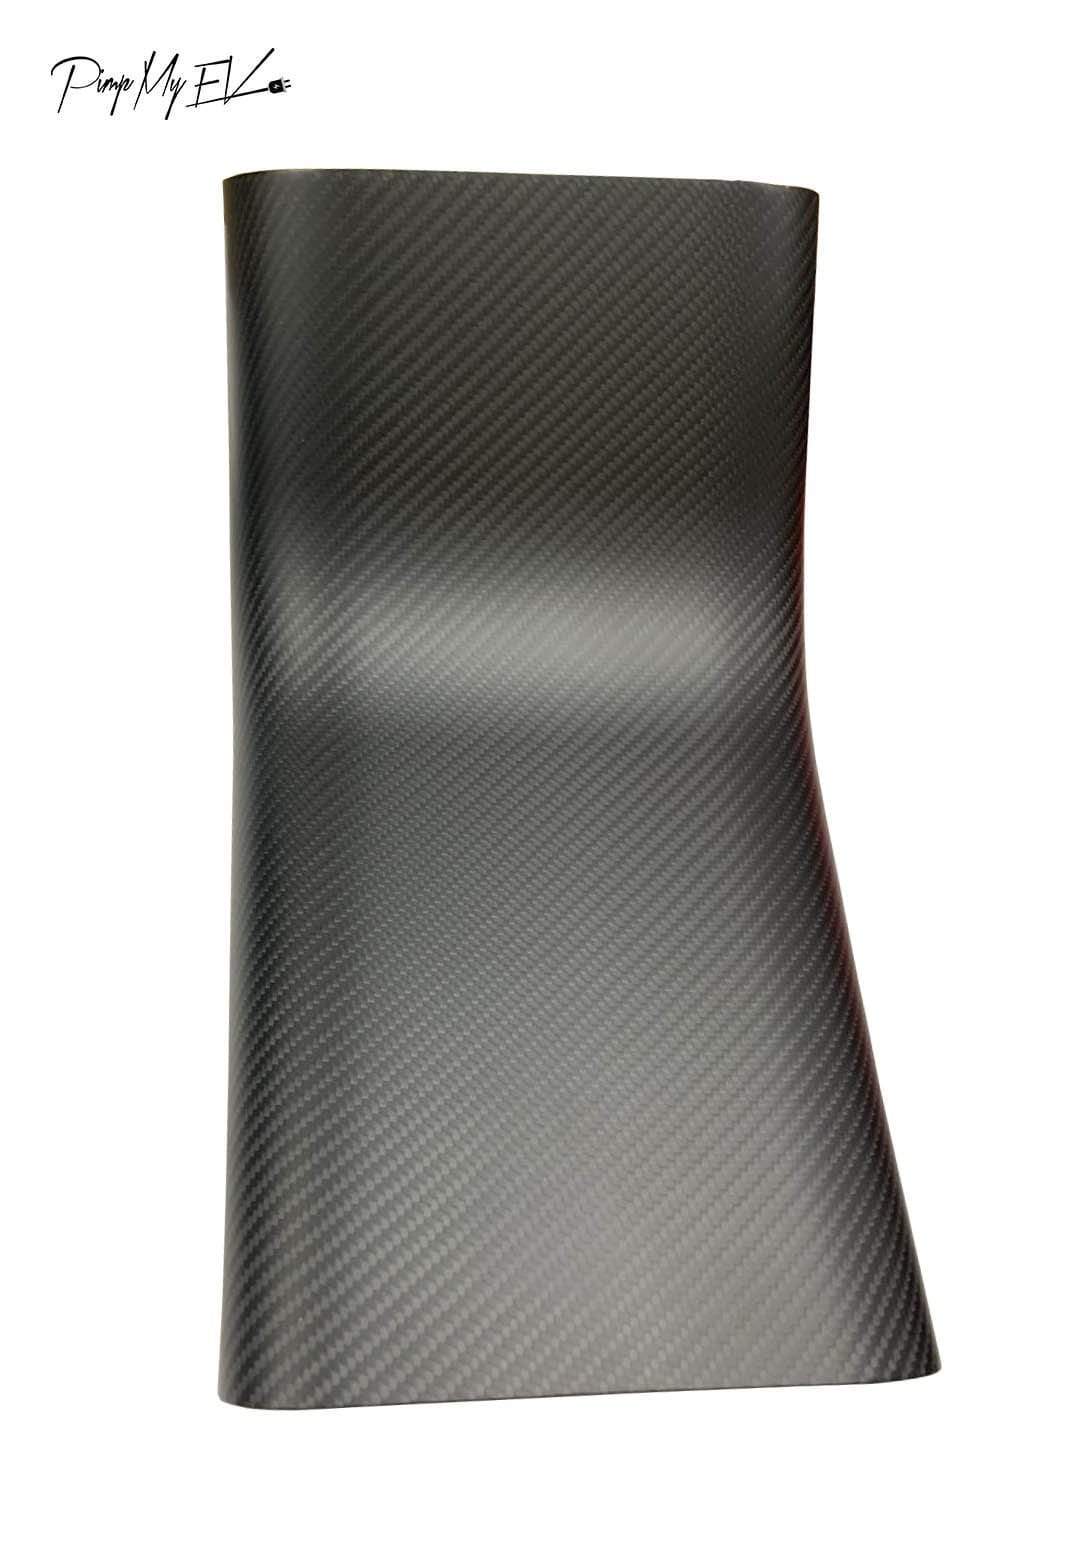 Rear AC vent Cover White & Carbon Fiber for Tesla Model 3 & Model Y – TALSEM